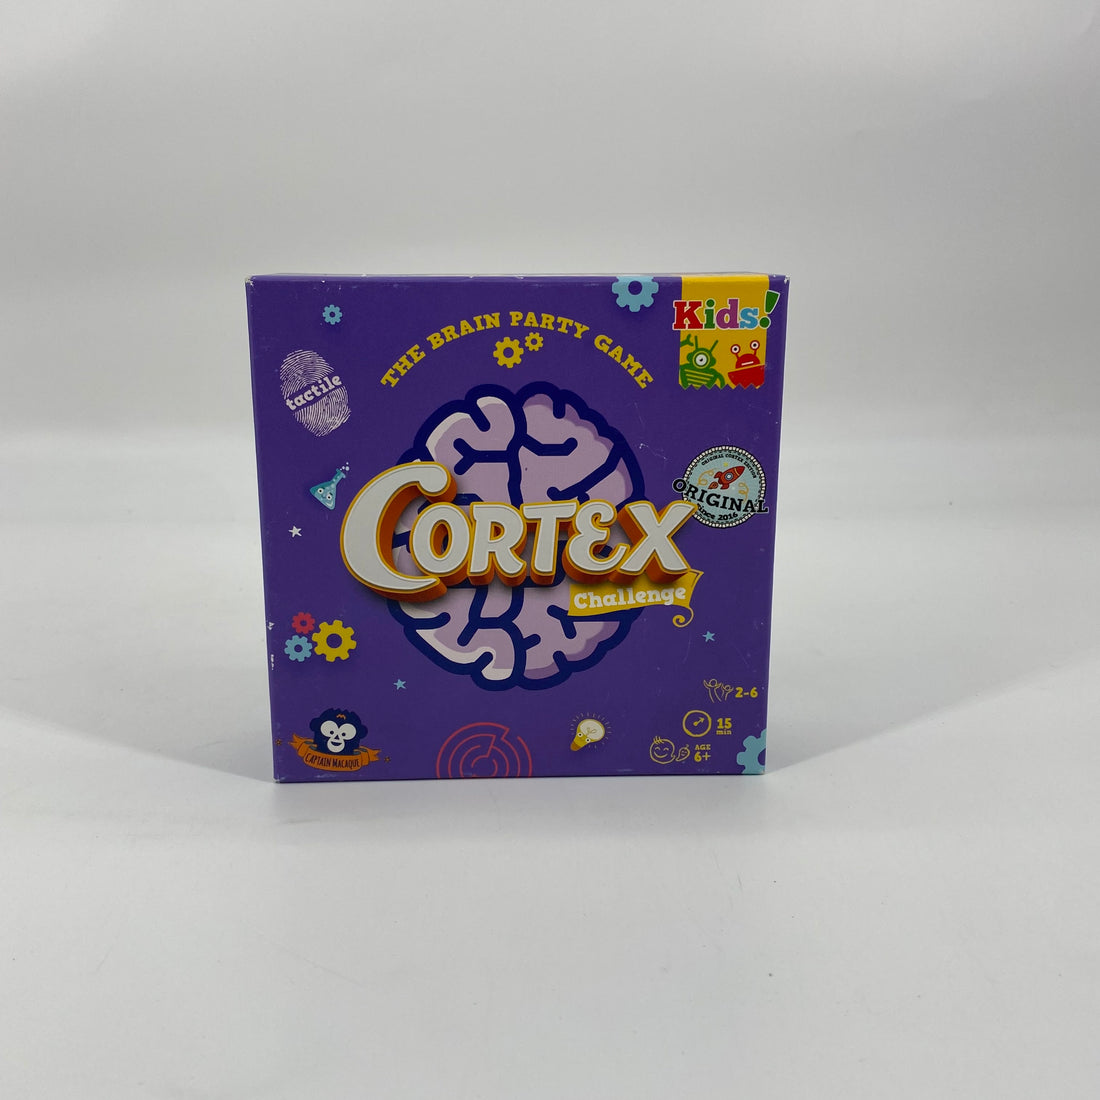 Cortex challenge kids- Édition 2017